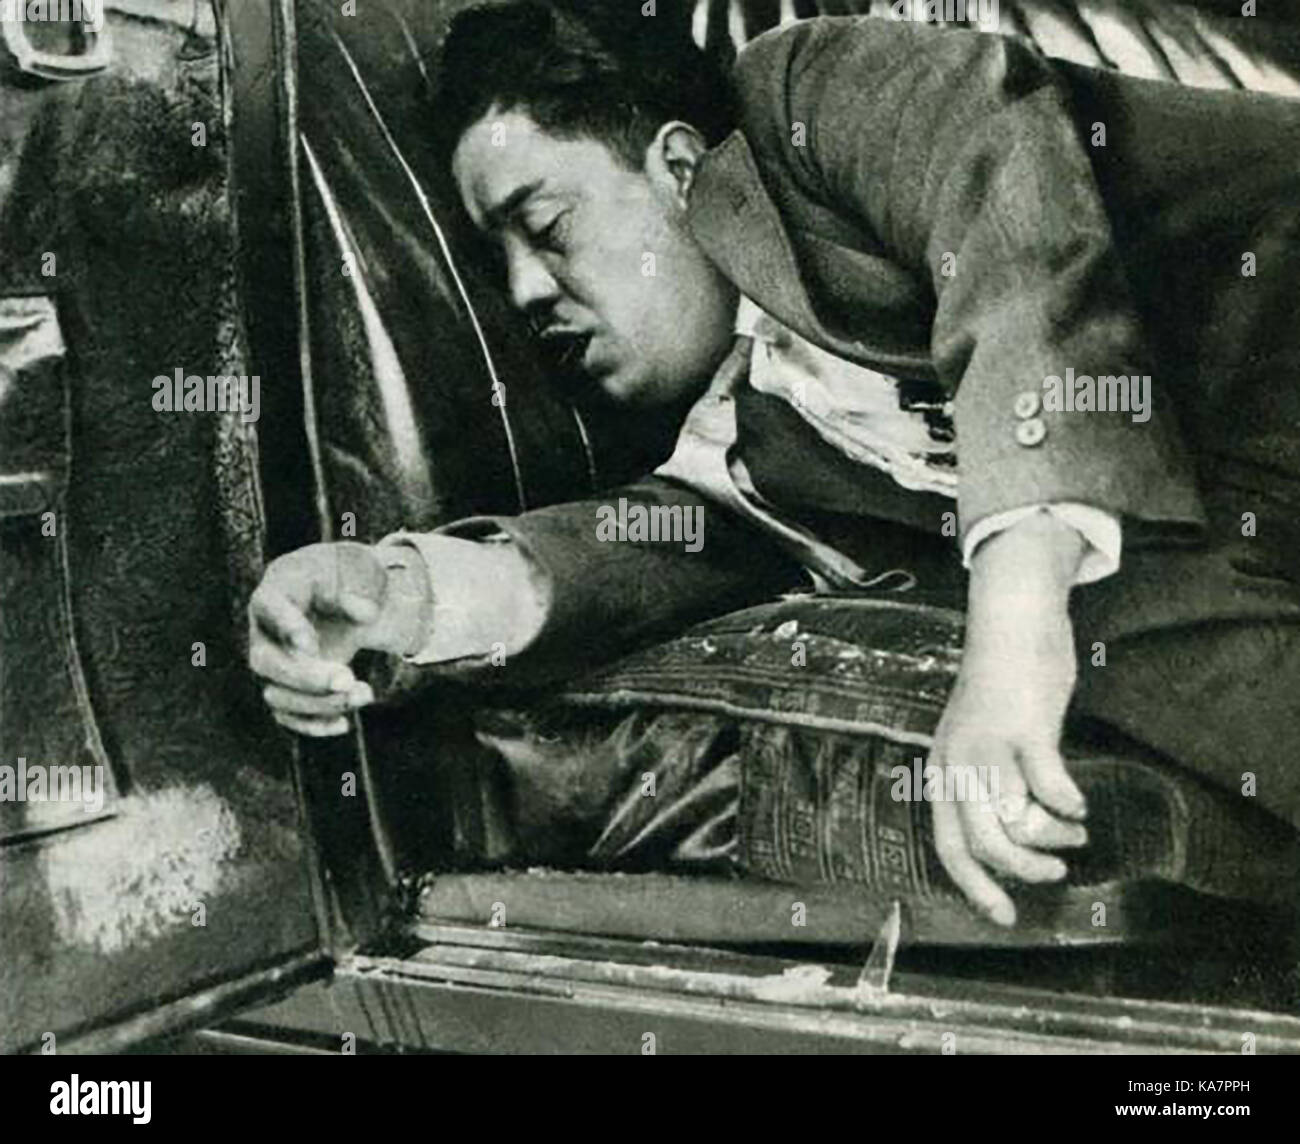 Kriminalität 1929 - USA - Chicago gangland Töten - Eine offizielle vintage Polizei Foto von mexikanischen Nemesio Monroy, der Schuss war tot, während die Bewachung der Agua Caliente 'money Auto" mit $ 85,800 - Stockfoto